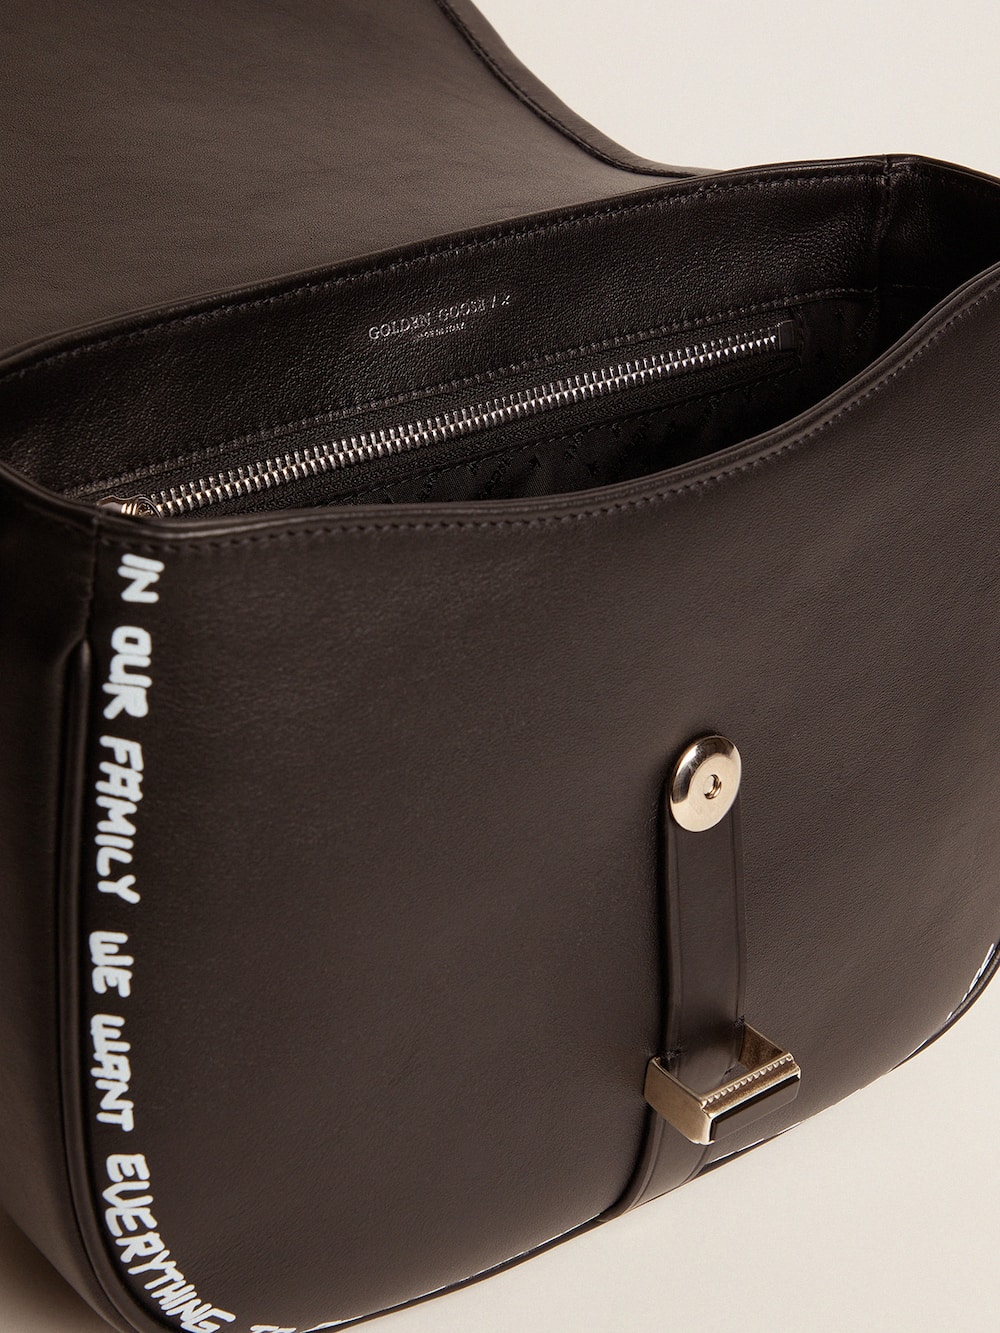 Golden Goose - Bolso Rodeo Bag Medium negro de piel con estampado serigrafiado in 